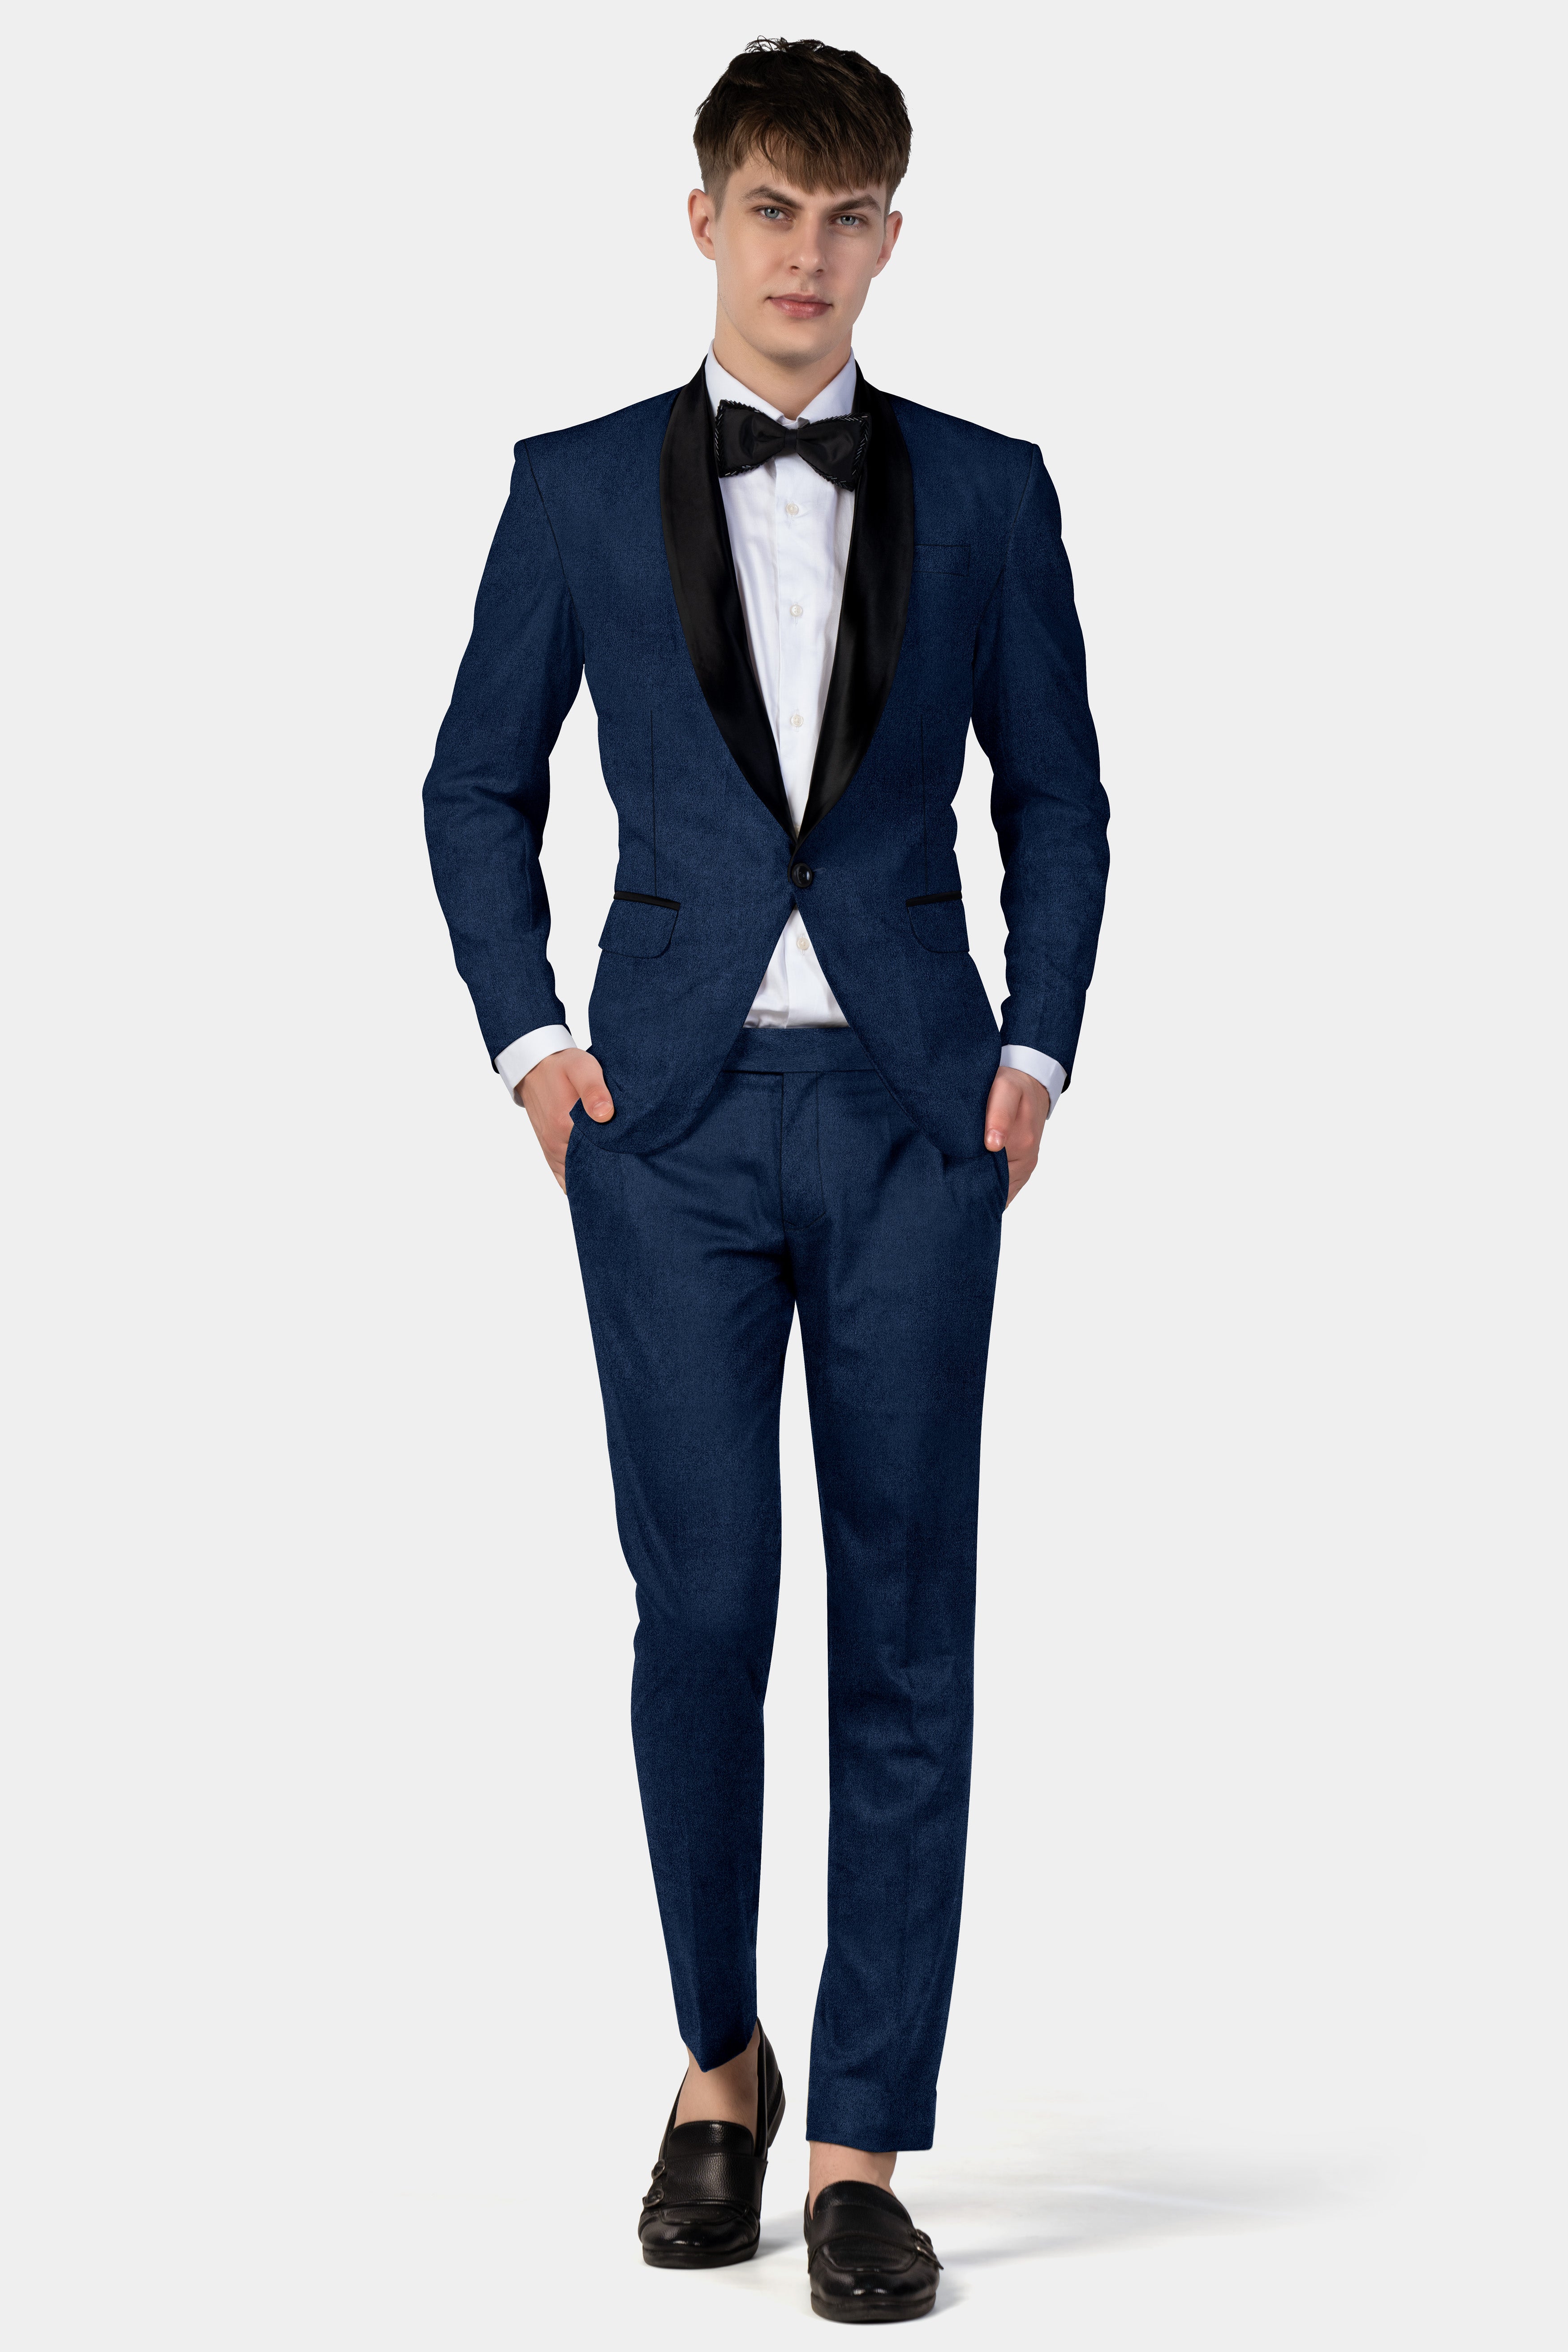 Downriver Blue Velvet Tuxedo Suit